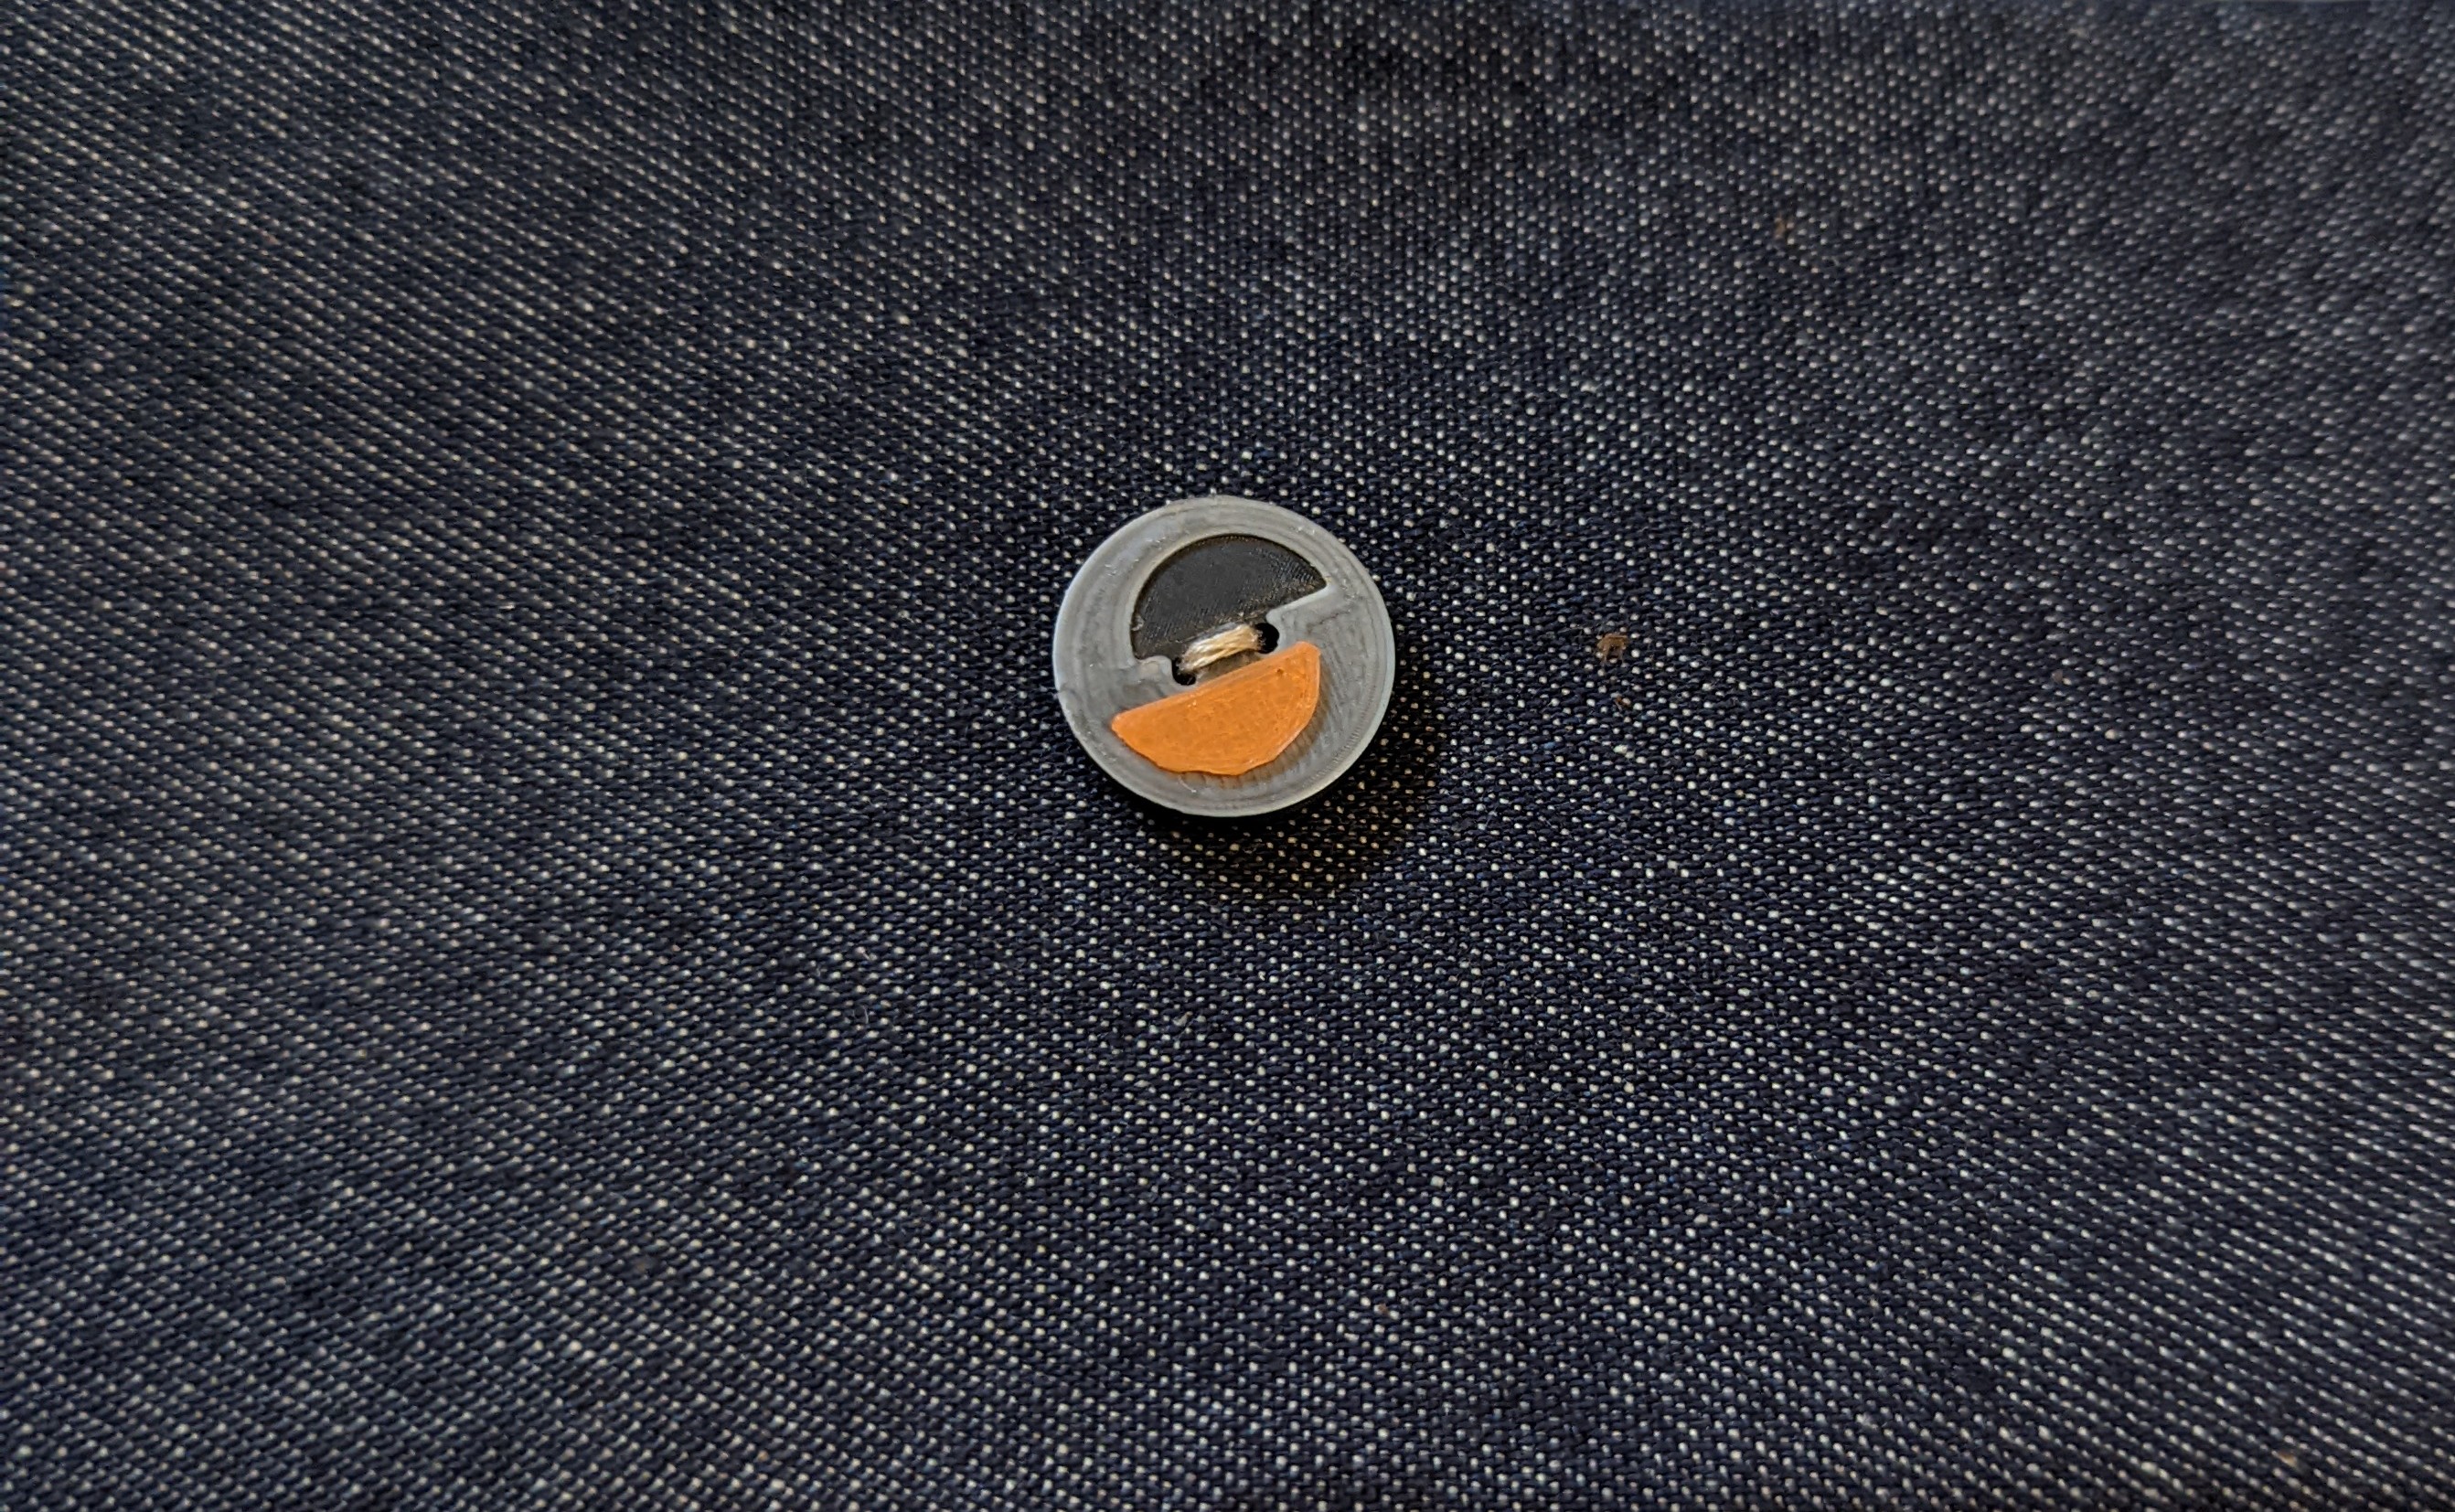 Sewing button PrusaSlicer logo